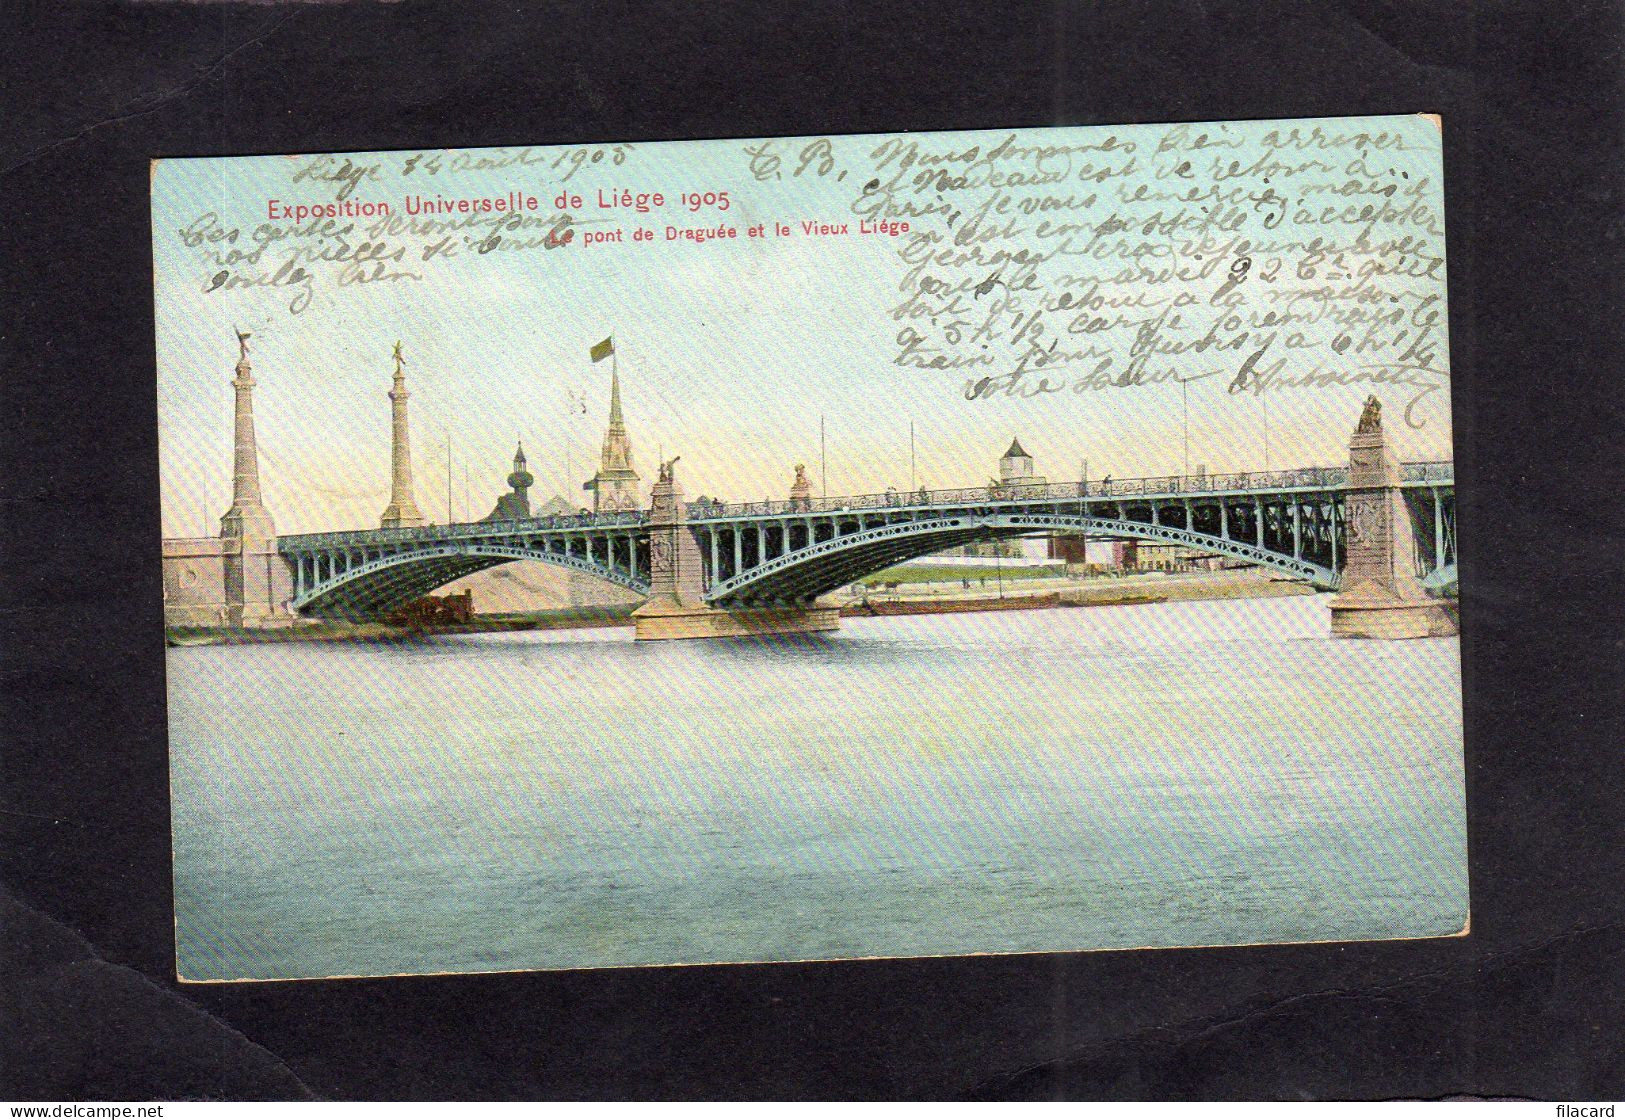 124209       Belgio,   Exposition  Universelle  De  Liege   1905,  Le  Pont De  Draguee Et  Le  Vieux  Liege,  VG  1905 - Ausstellungen